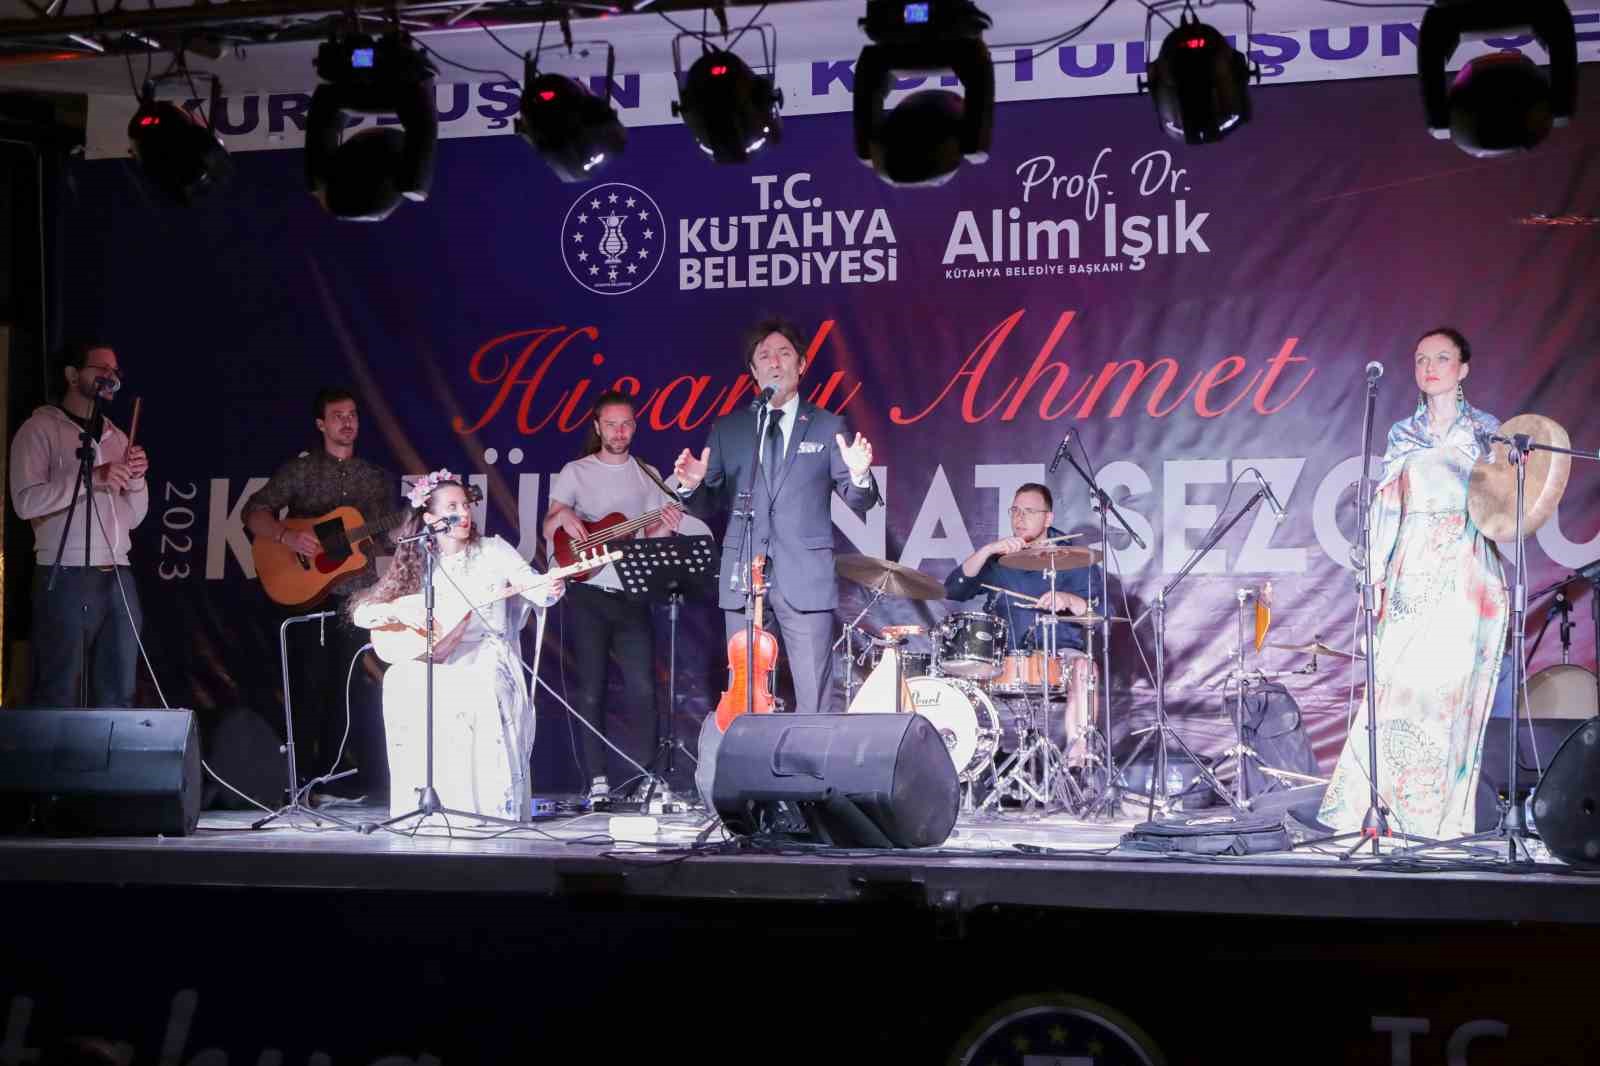 Kütahyalılar, Türk-Macar halk şarkılarıyla eğlendi